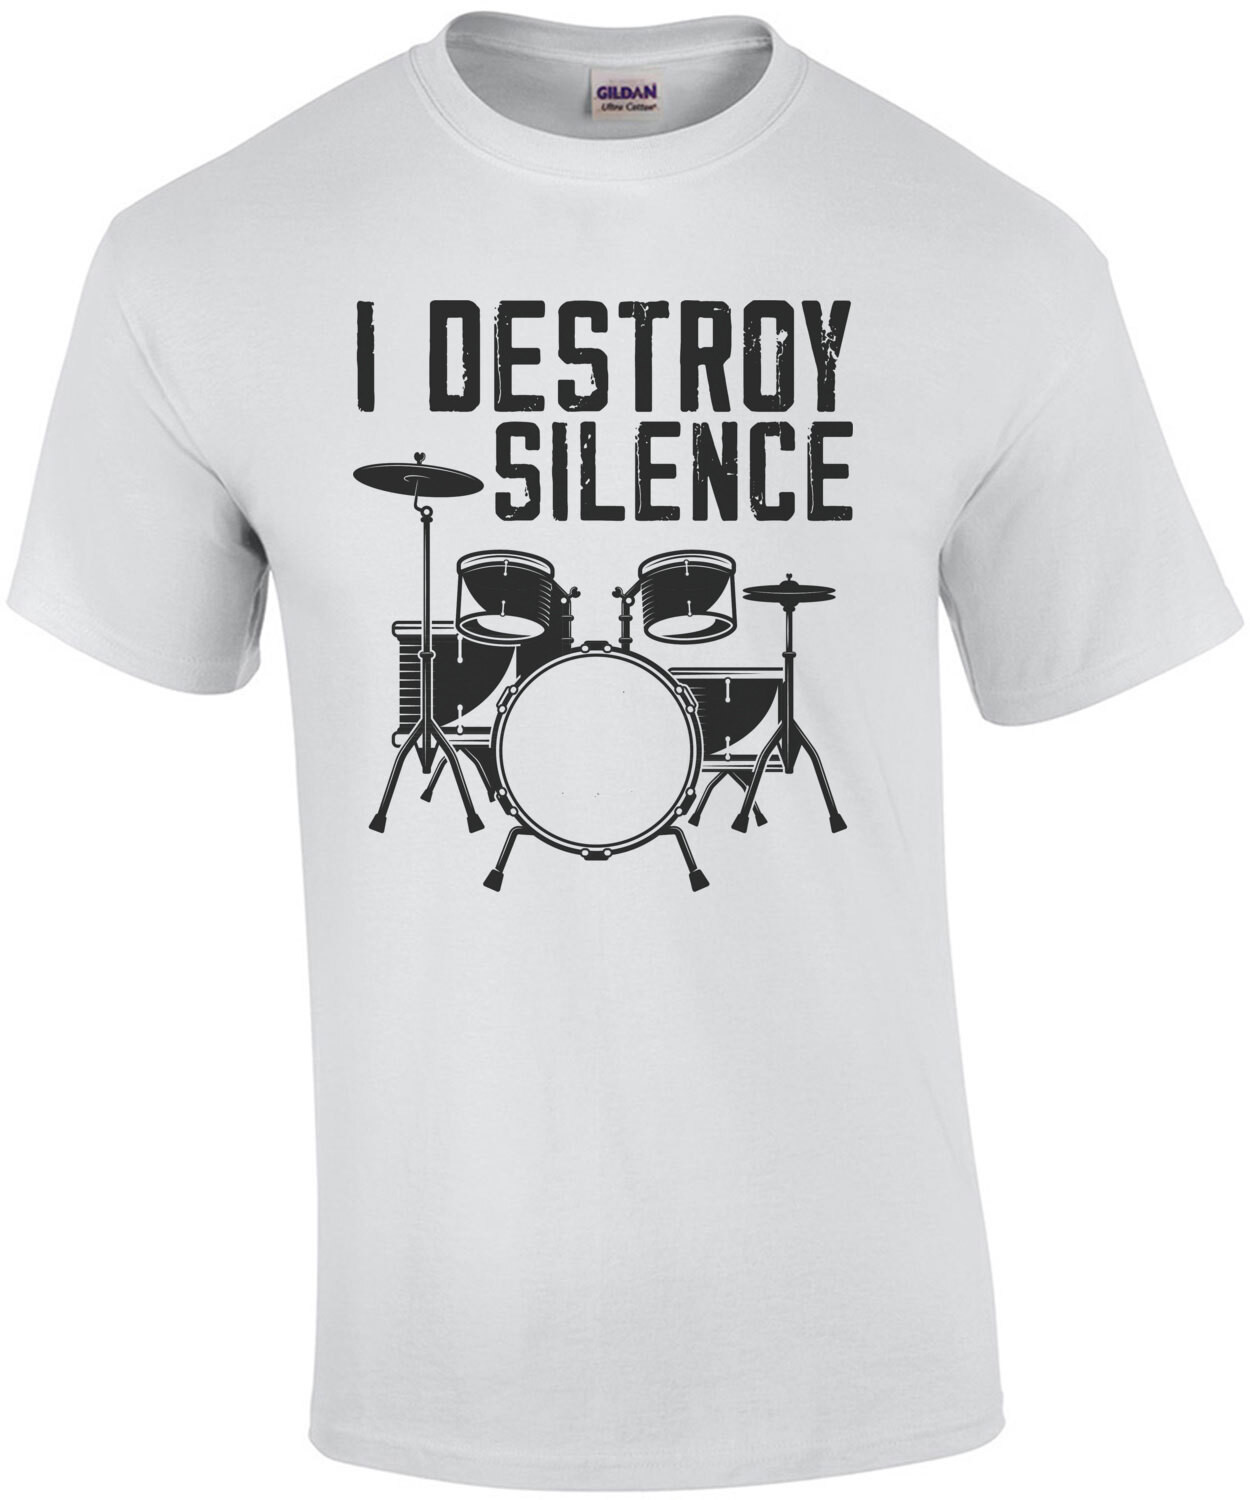 I destroy silence  - drummer t-shirt